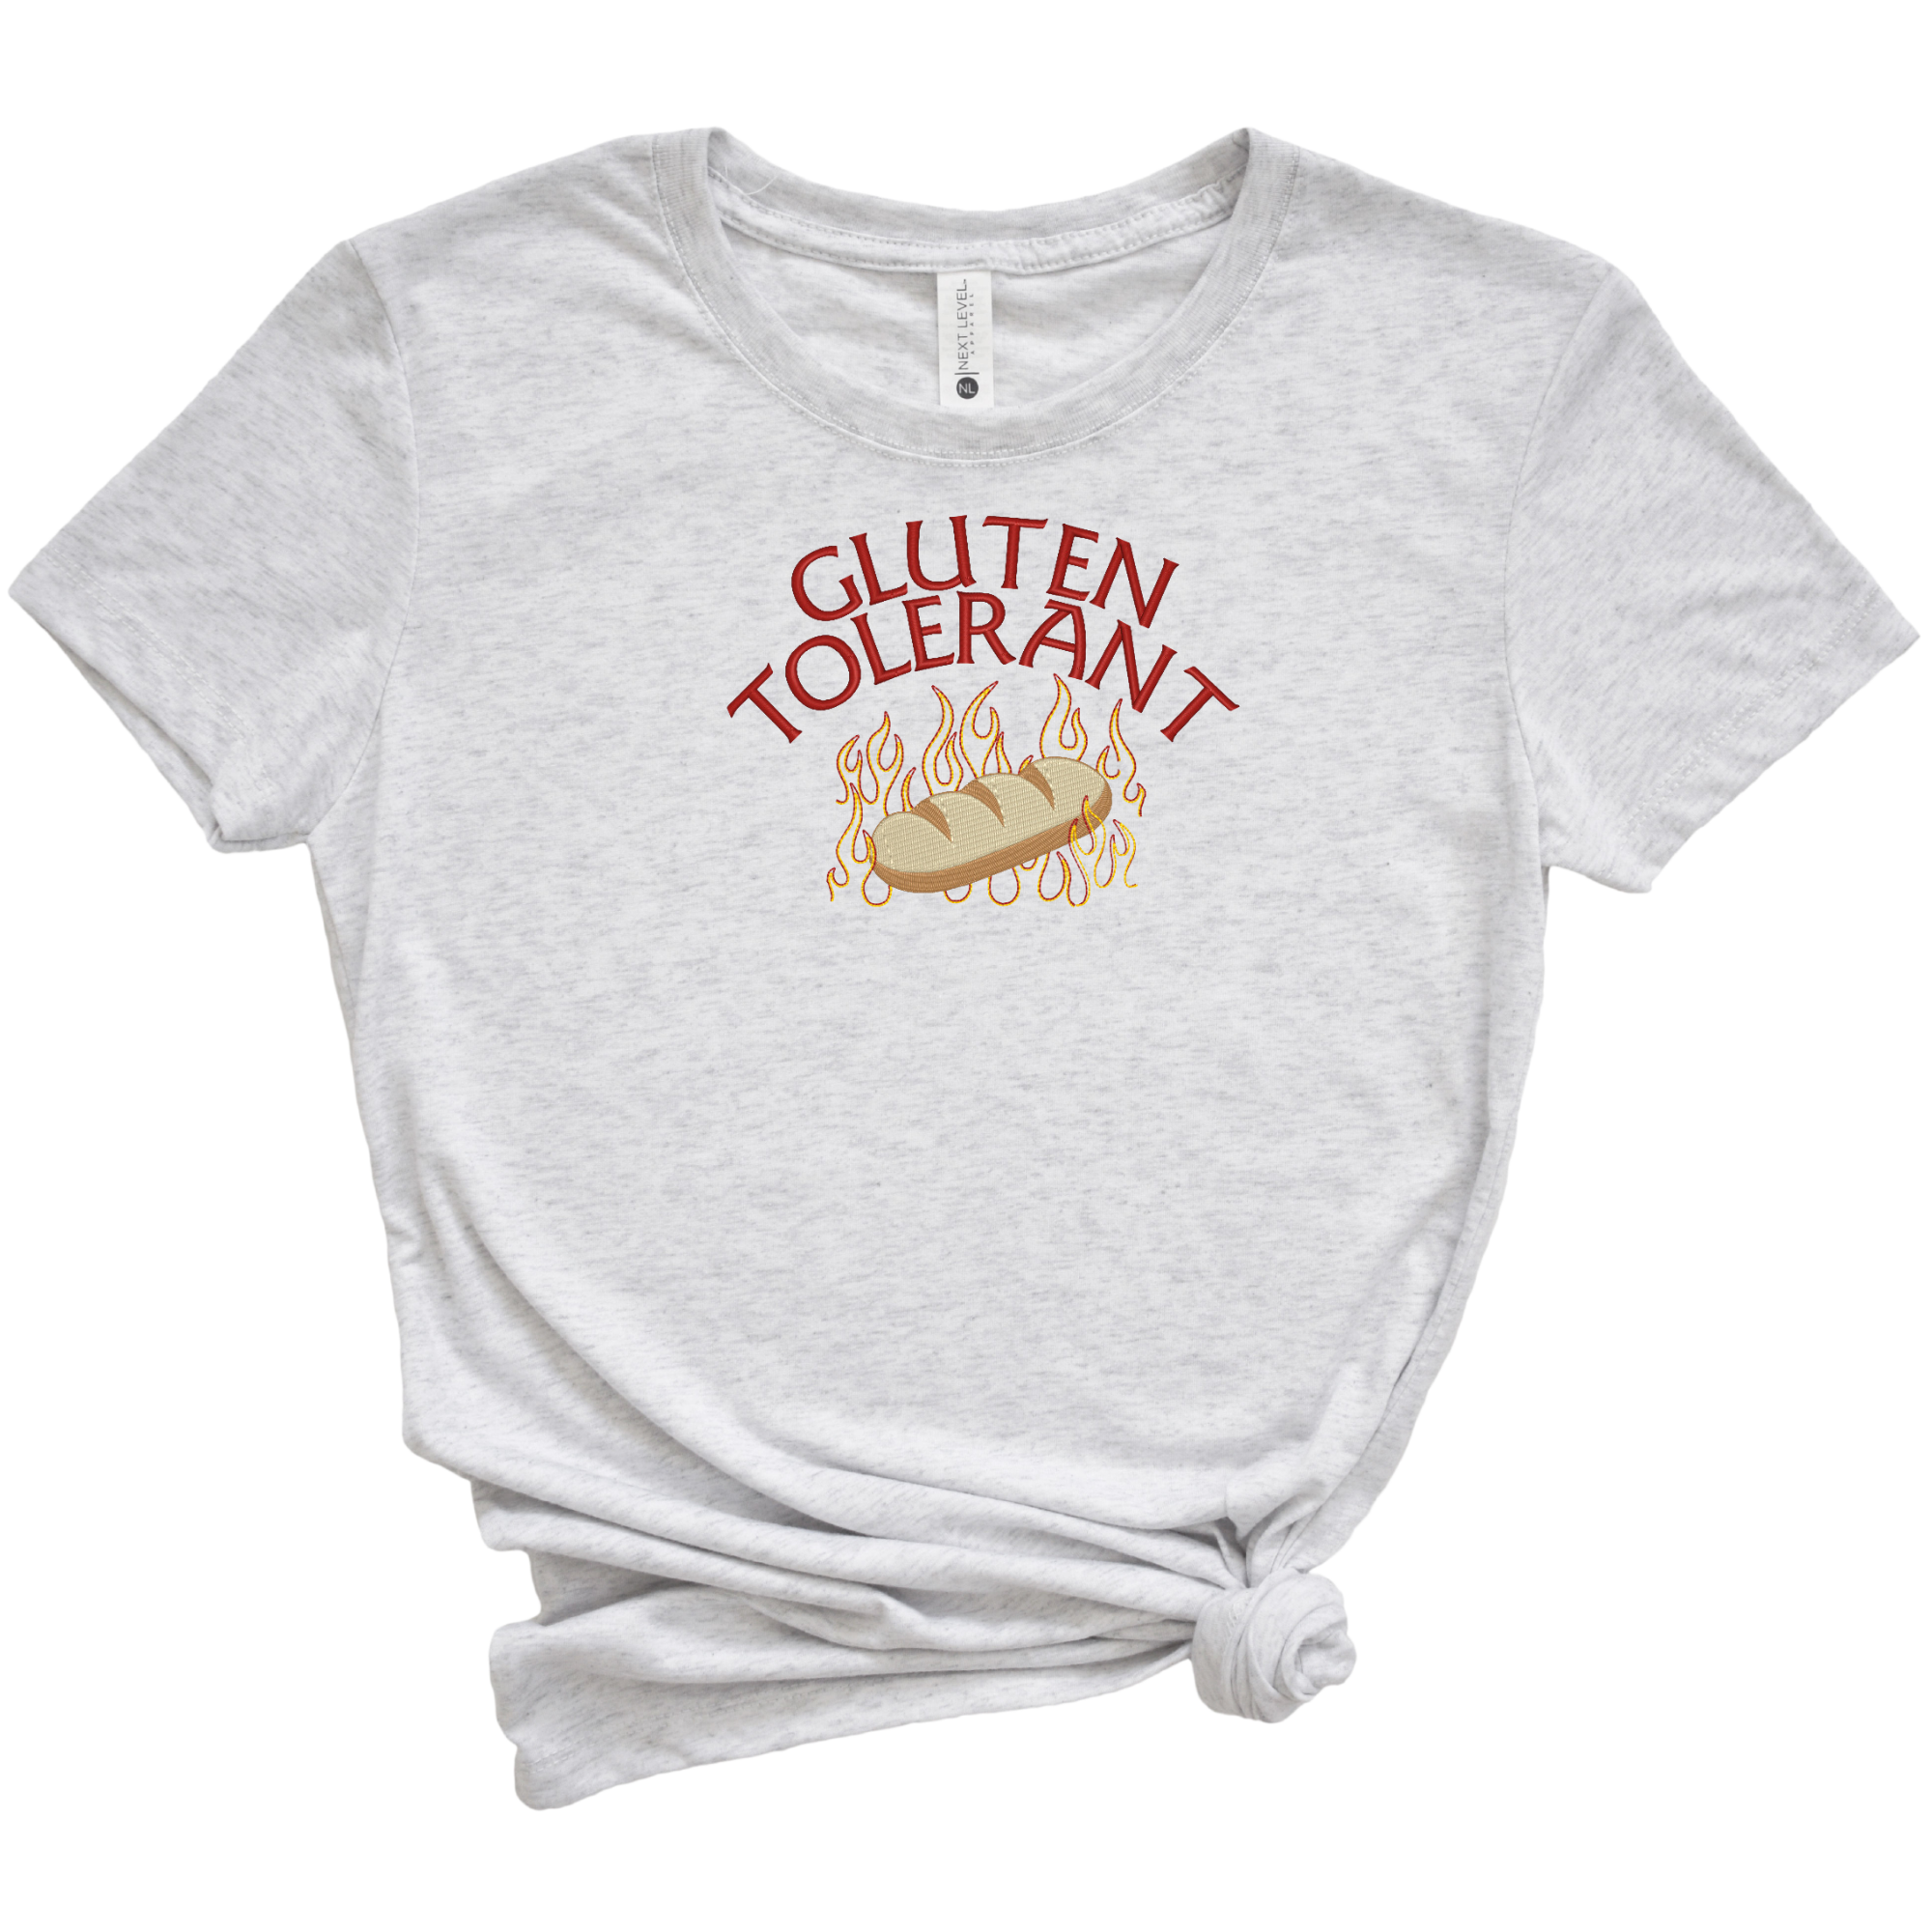 Gluten Tolerant Embroidered Tee Shirt, Unisex